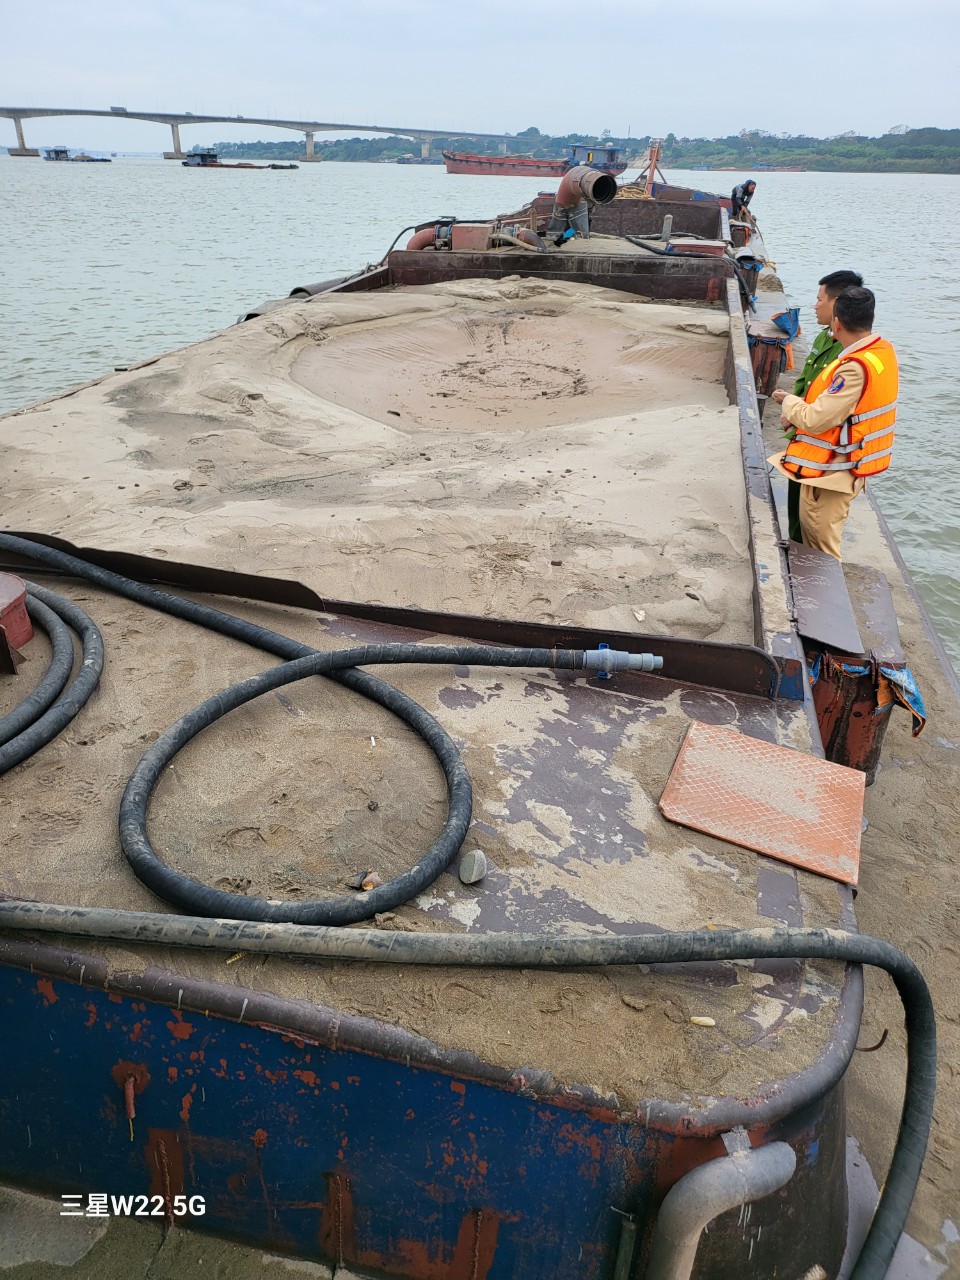 Cục CSGT bắt quả tang tàu bơm hút cát trái phép, thu giữ hơn 100 khối cát- Ảnh 5.